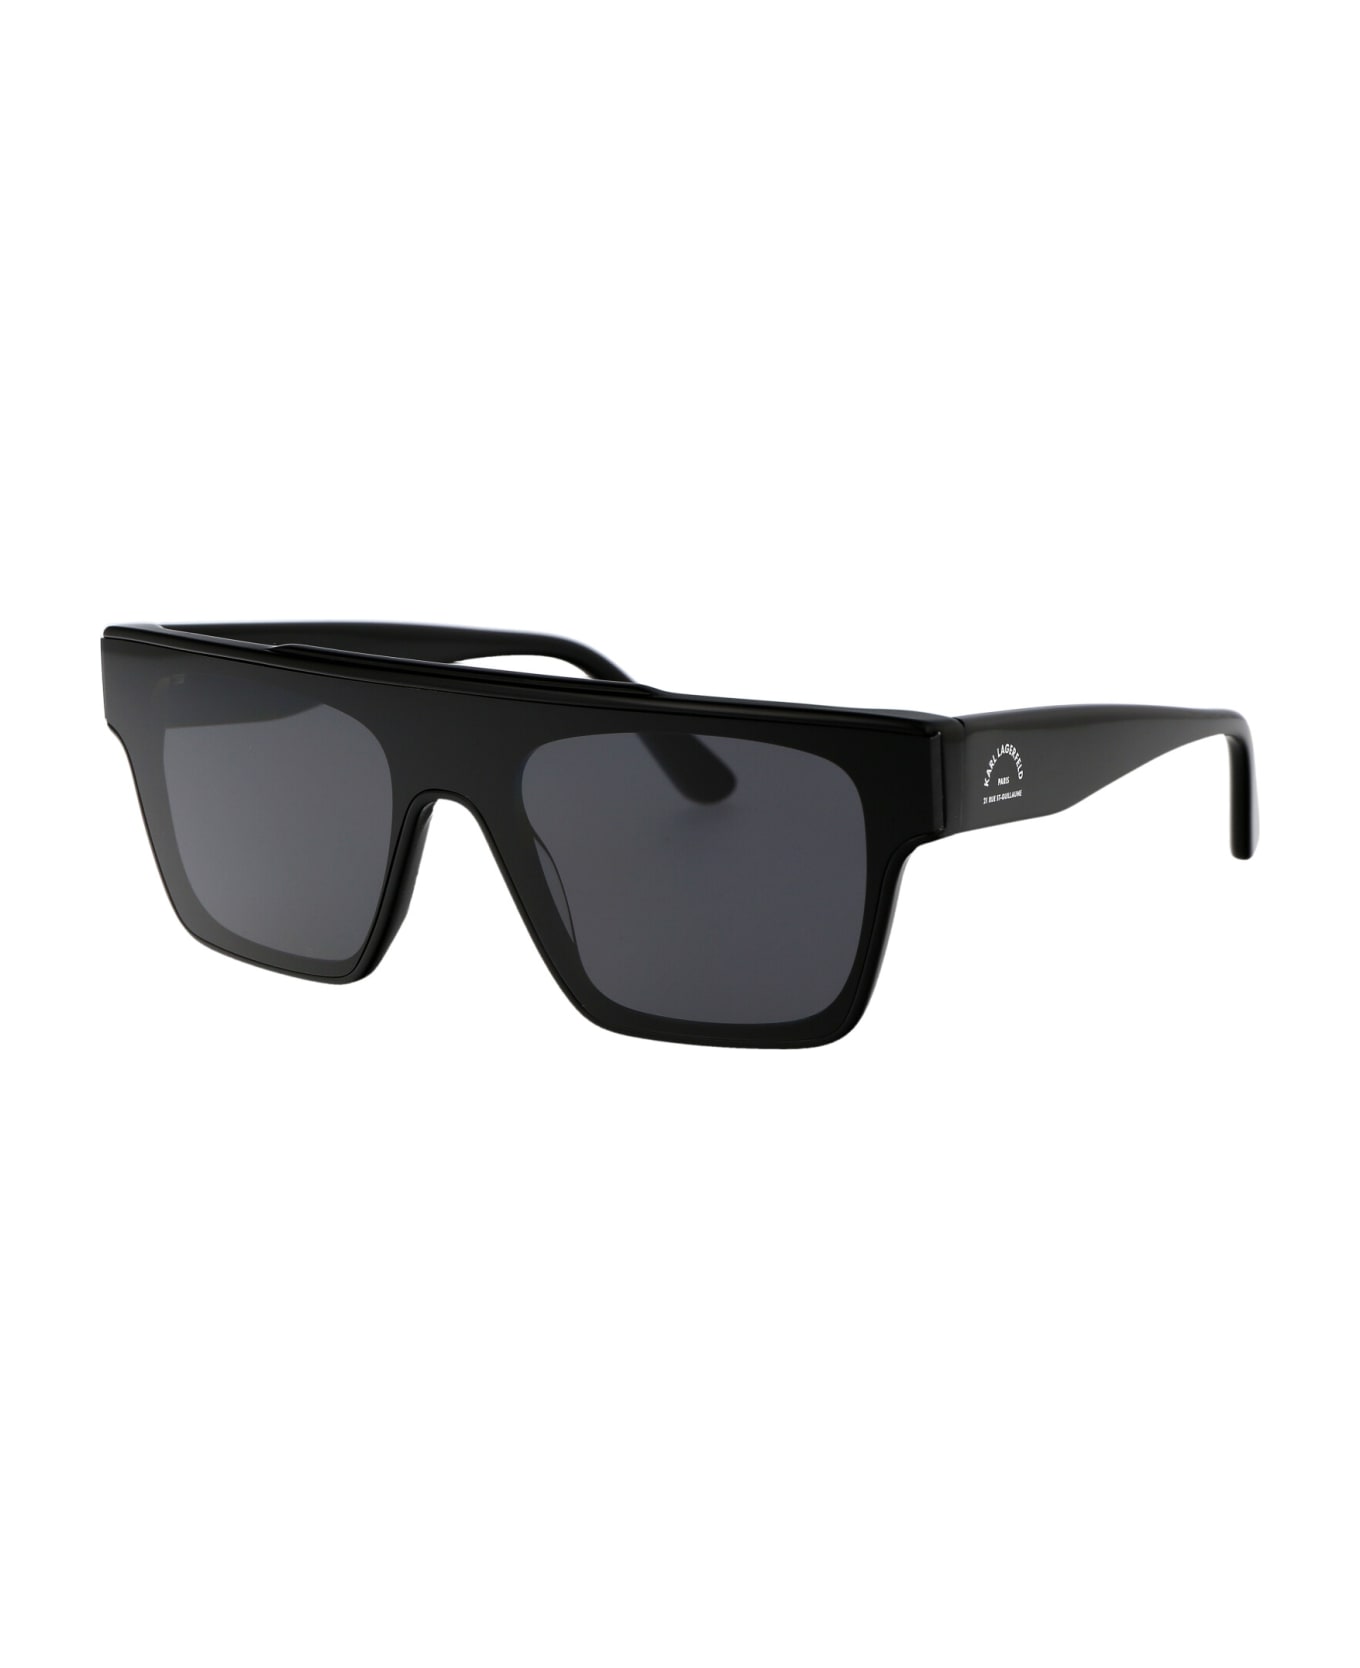 Karl Lagerfeld Kl6090s Sunglasses - 001 BLACK